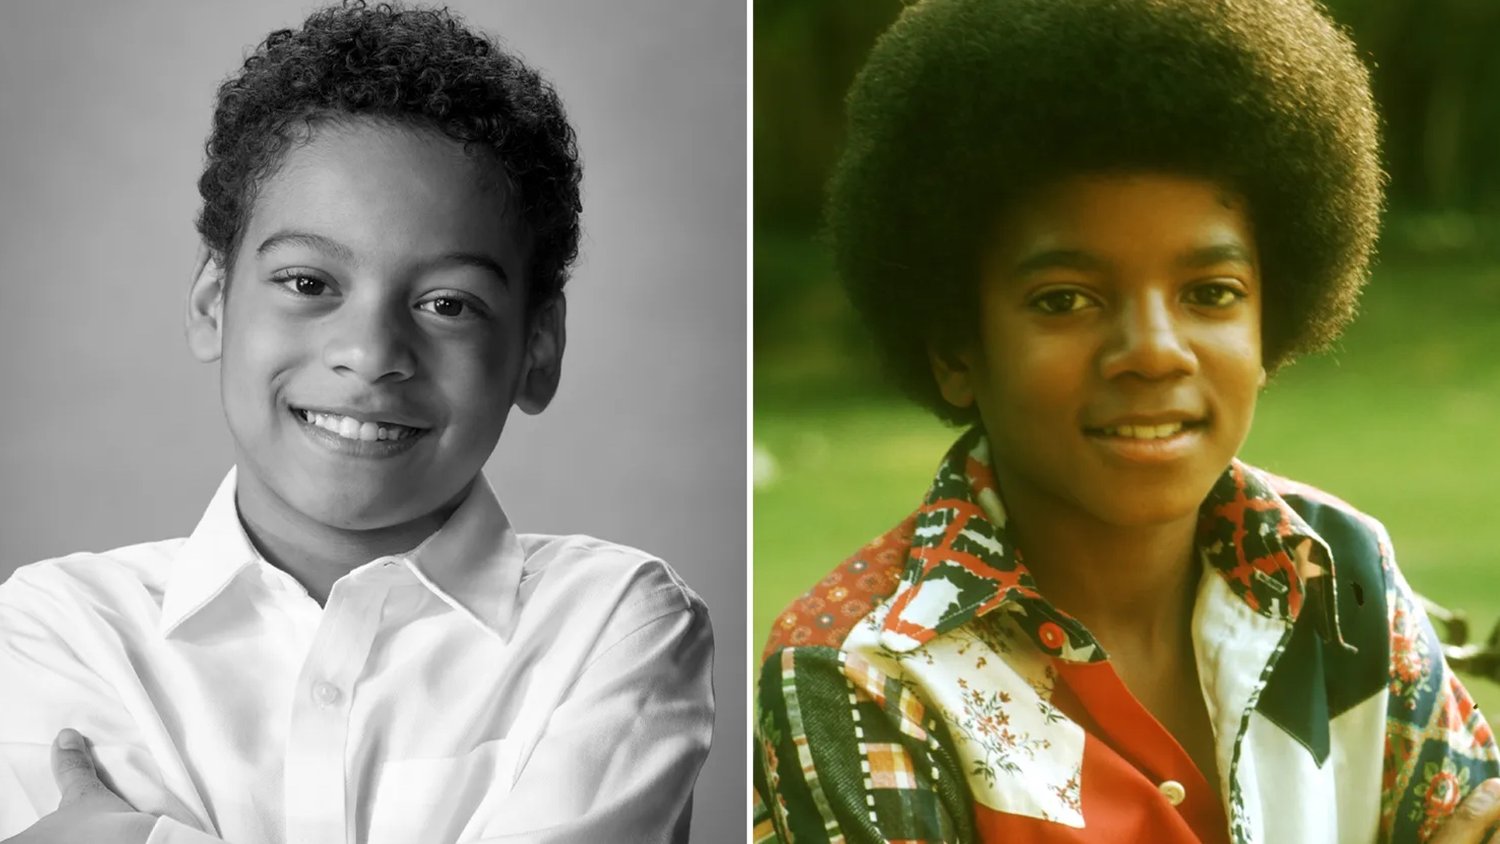 Antoine Fuqua choisit l'acteur pour incarner le jeune Michael Jackson dans son biopic MICHAEL